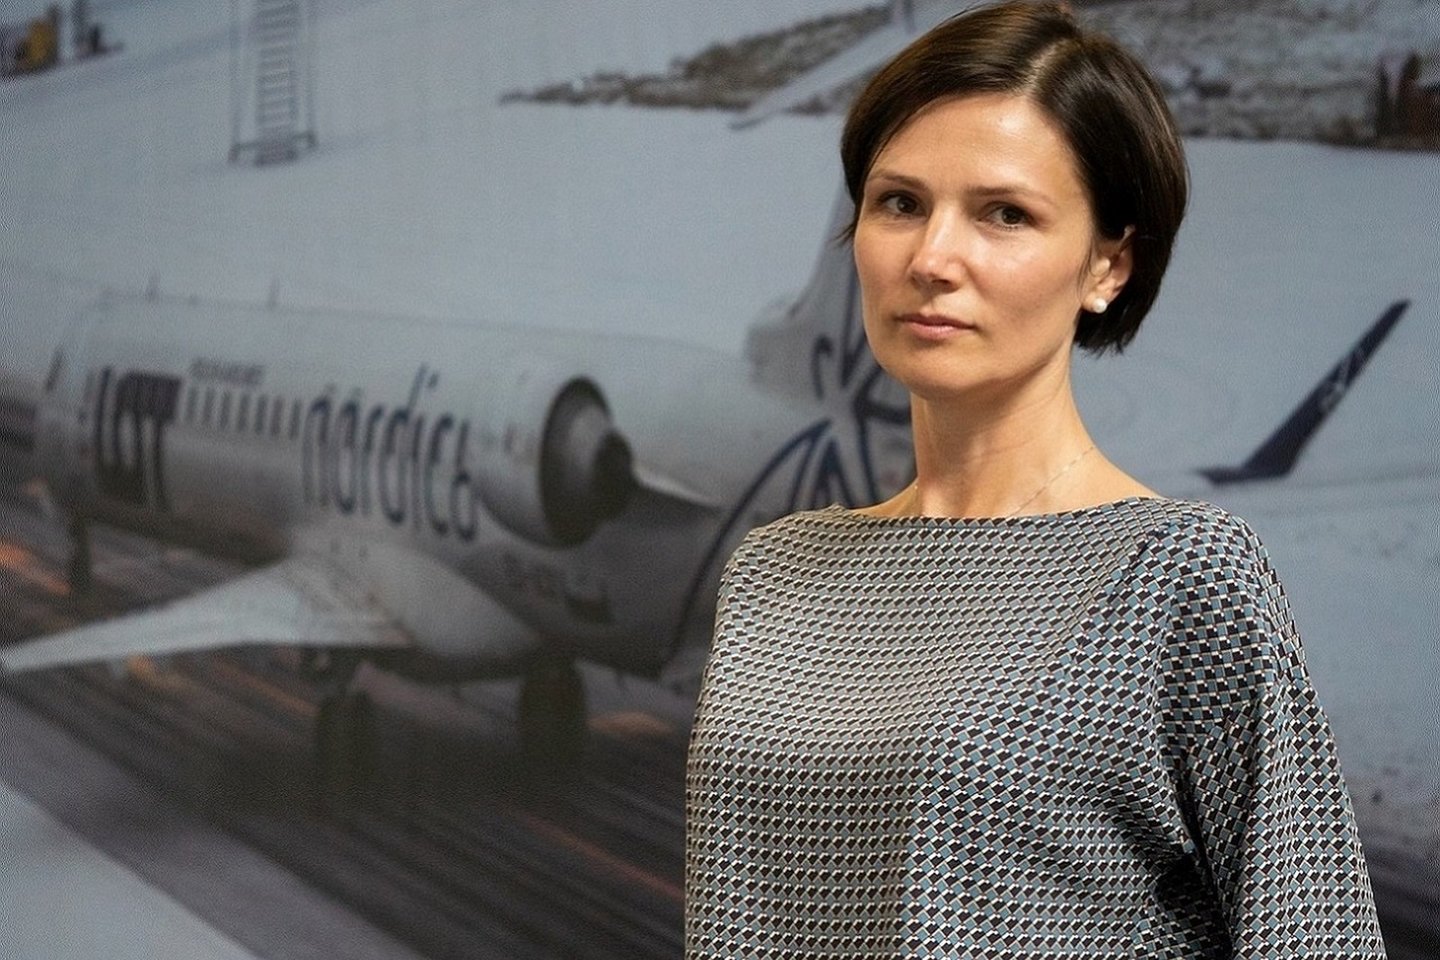  Lietuvos oro uostai turi naują vykdomąją direktorę. Birželio 12 d. šias pareigas pradėjo eiti Laura Joffė. <br>  Asmeninio archyvo nuotr.